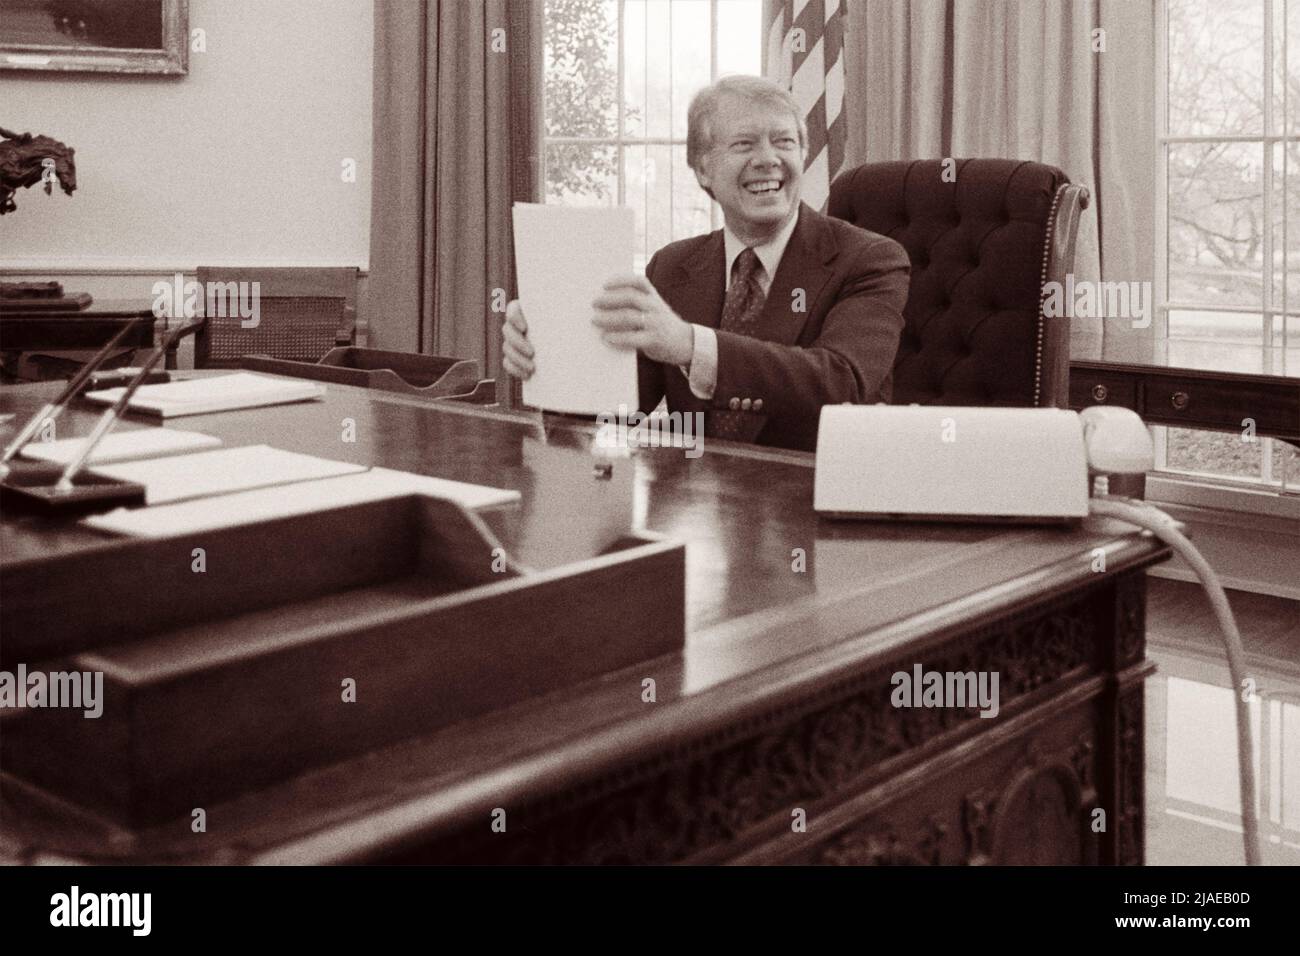 Le président américain Jimmy carter a prononcé un discours pour la télévision dans le Bureau ovale de la Maison Blanche, Washington, D.C., le 2 février 1977. (ÉTATS-UNIS) Banque D'Images